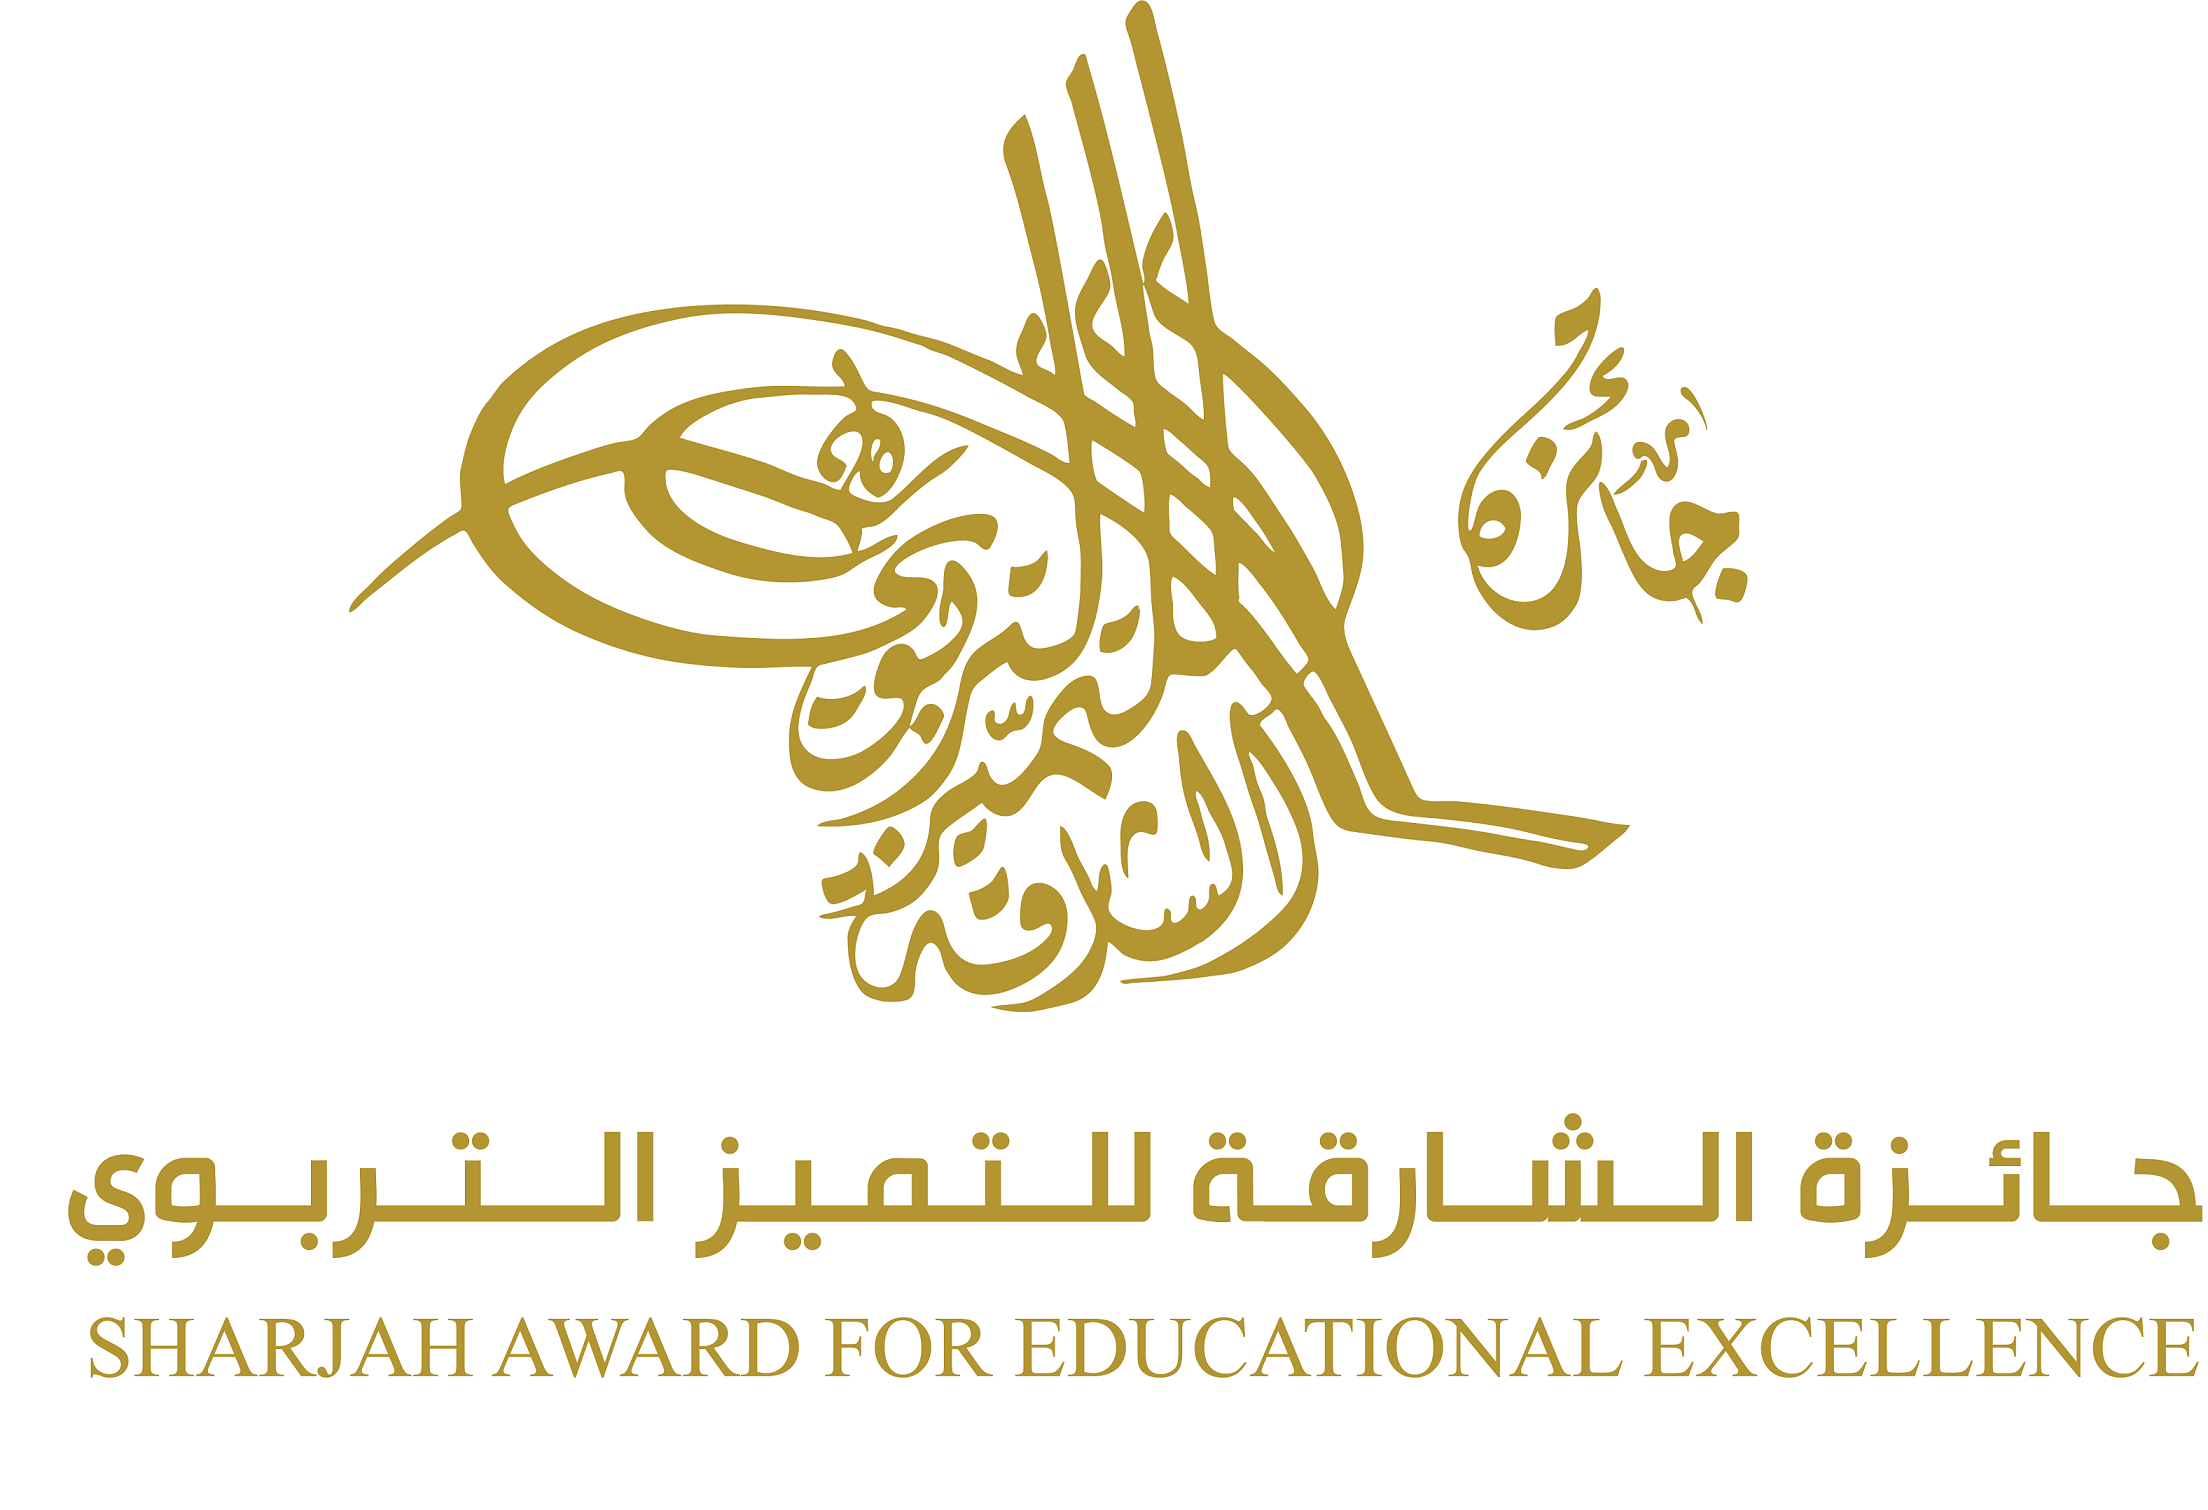 جائزة الشارقة للتميز التربوي تتيح مجالا من التميز والتفوق للطلبة في كافة المراحل الدراسية 